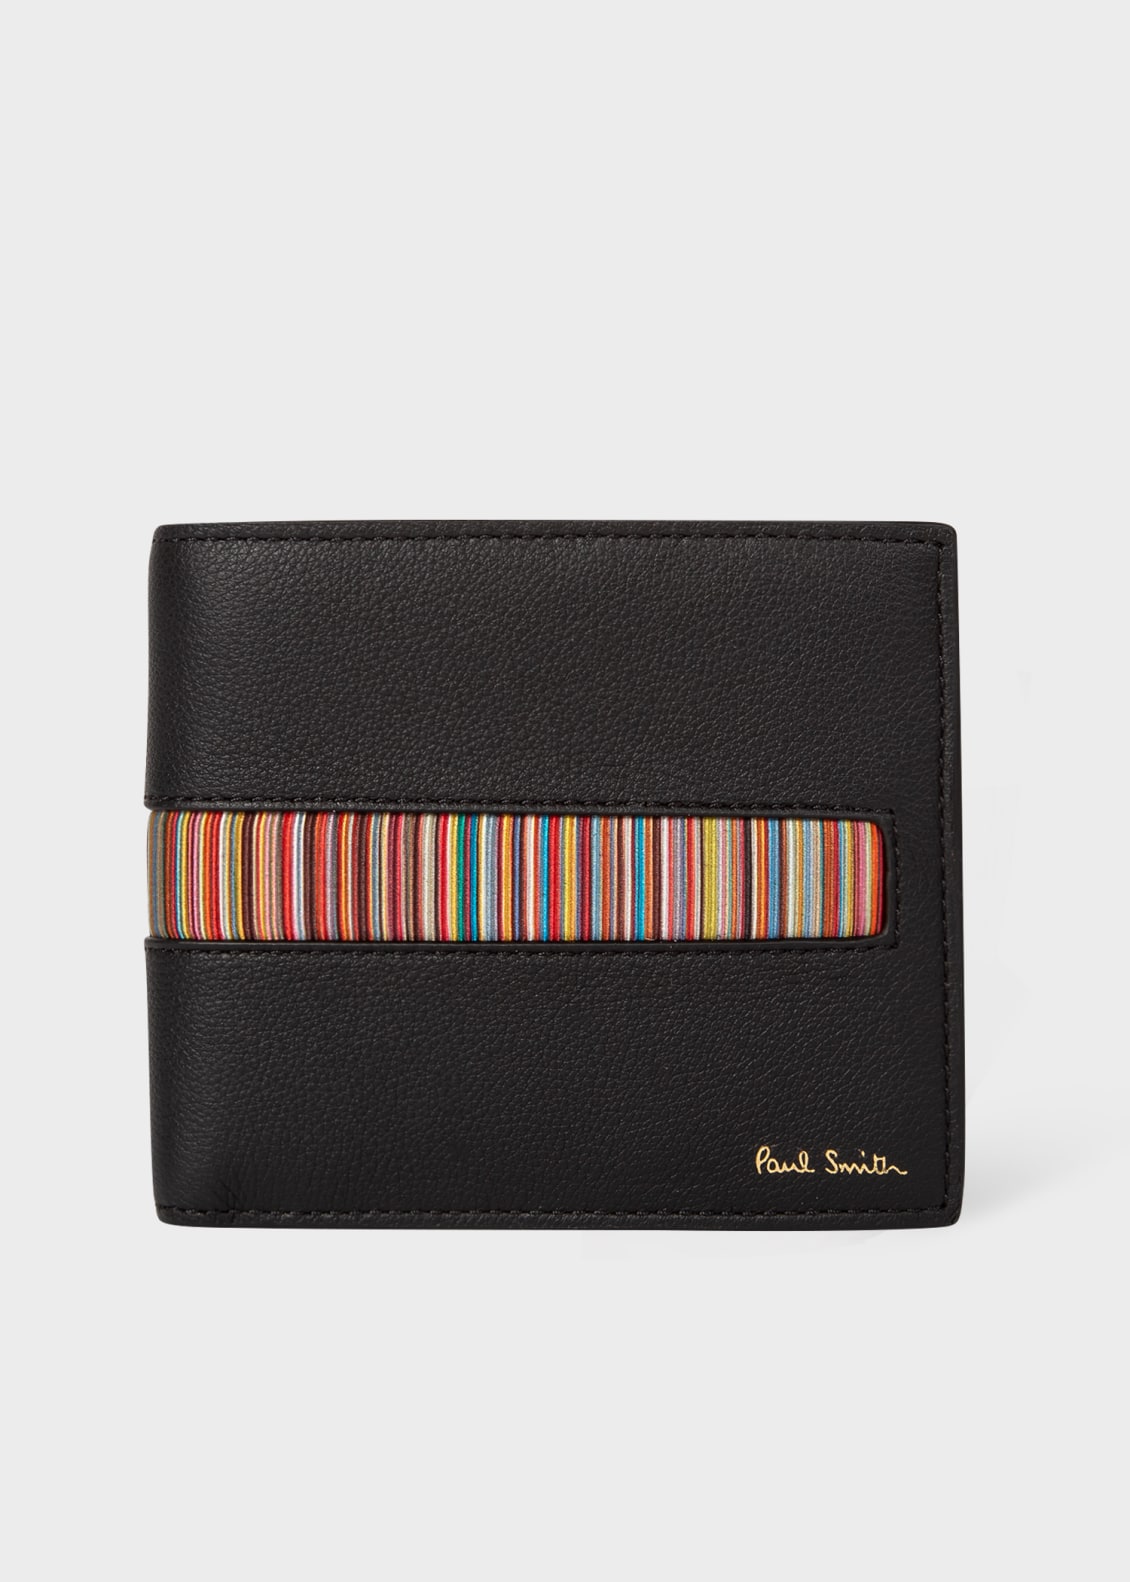 폴 스미스 Paul Smith Leather Billfold Wallet With Signature Stripe Insert